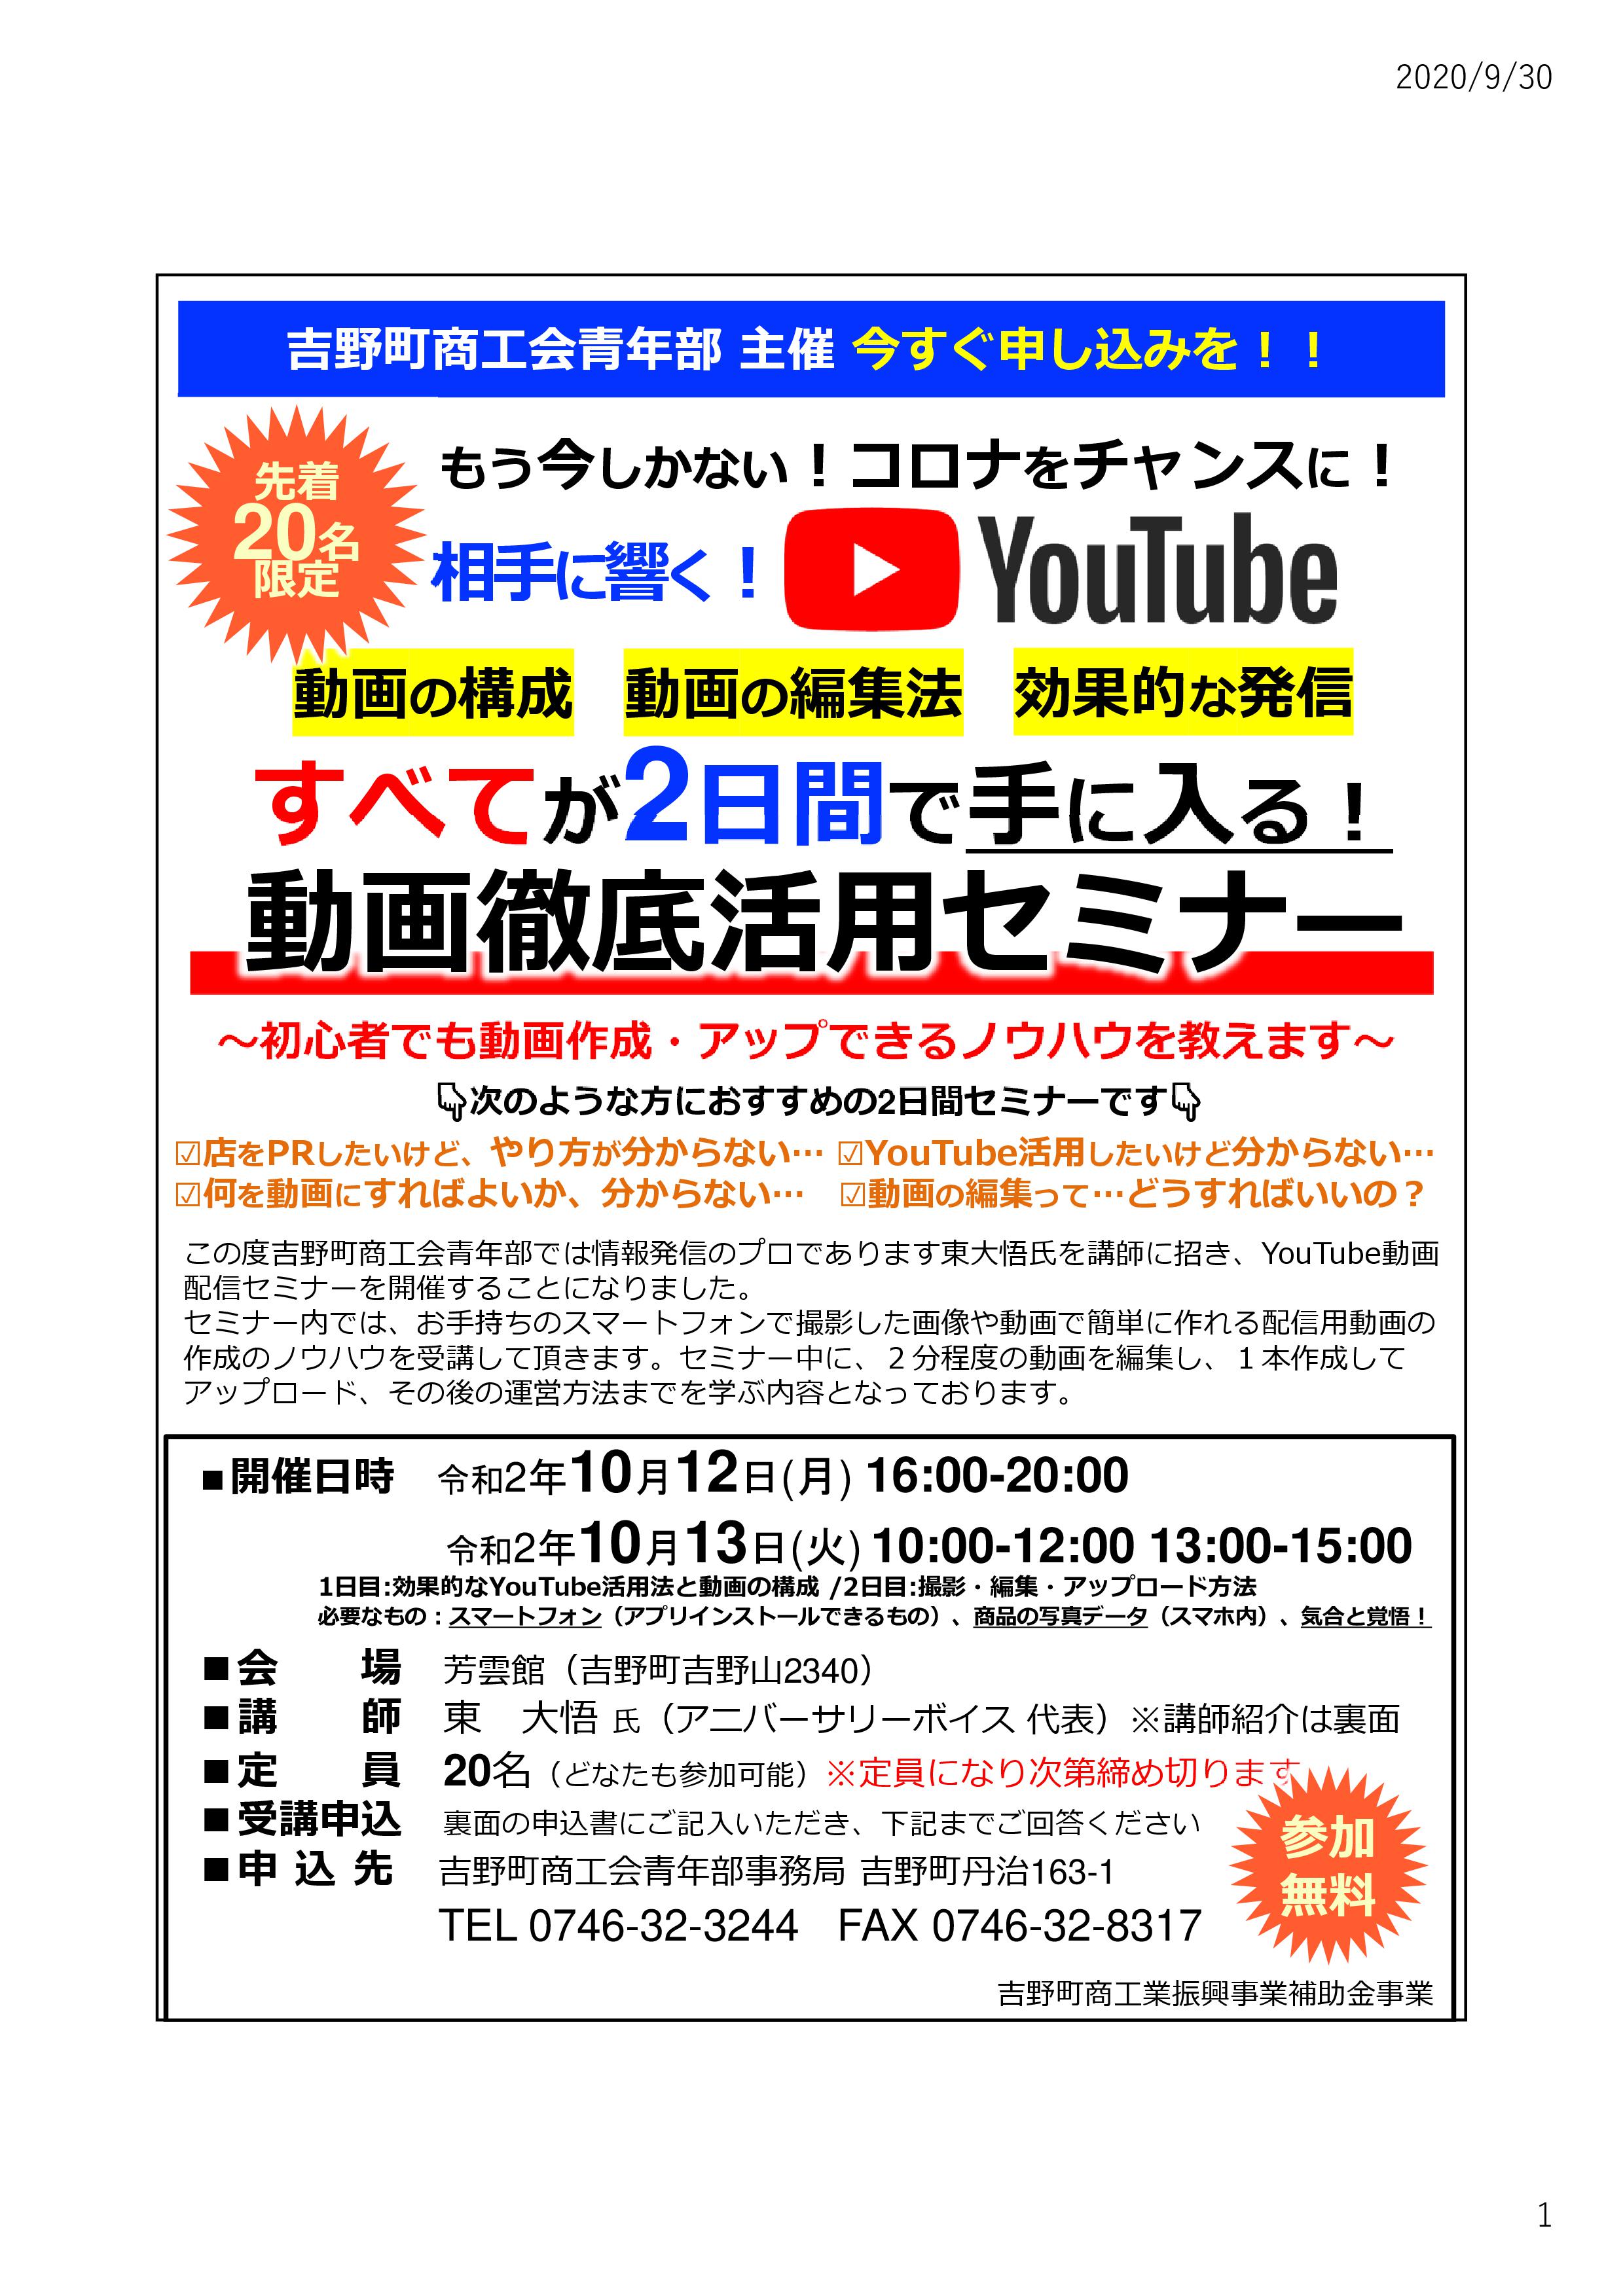 吉野町商工会青年部の「動画活用セミナー」を開催します。